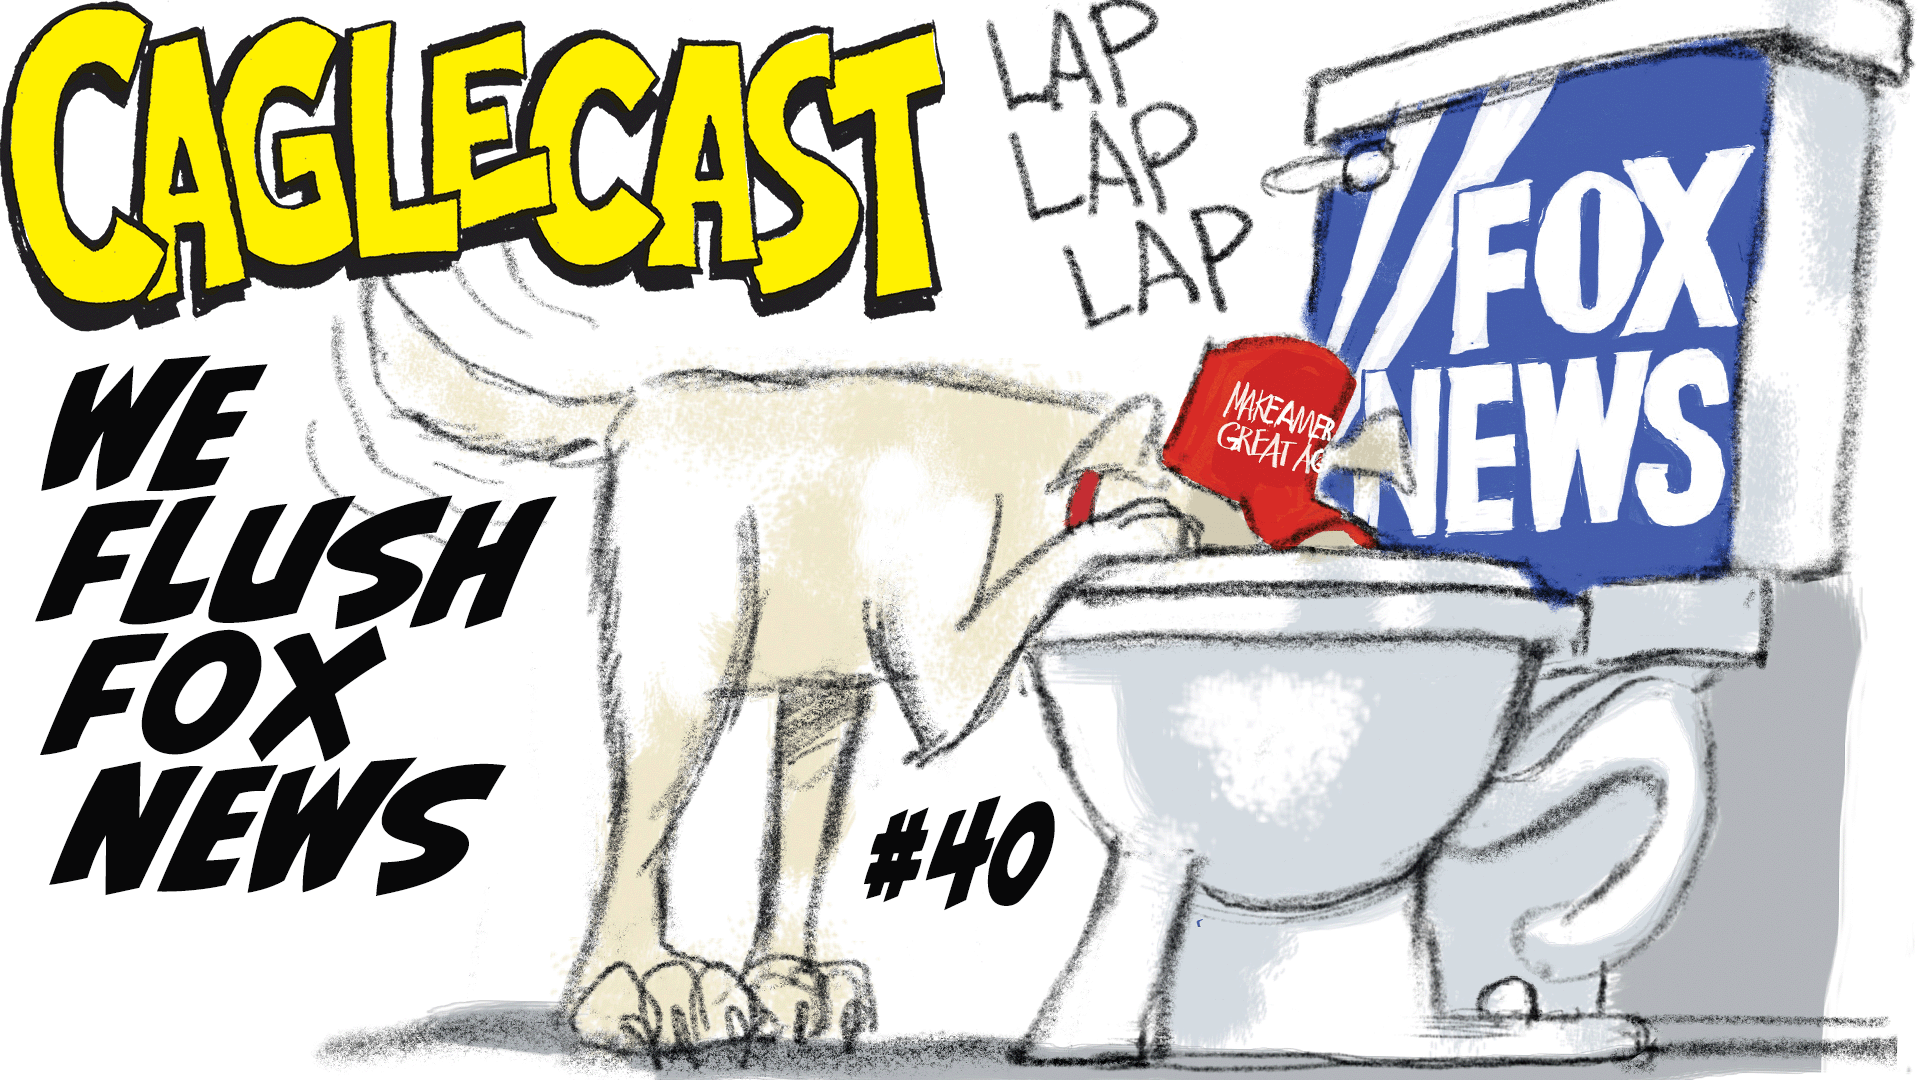 We Flush FOX NEWS! poster